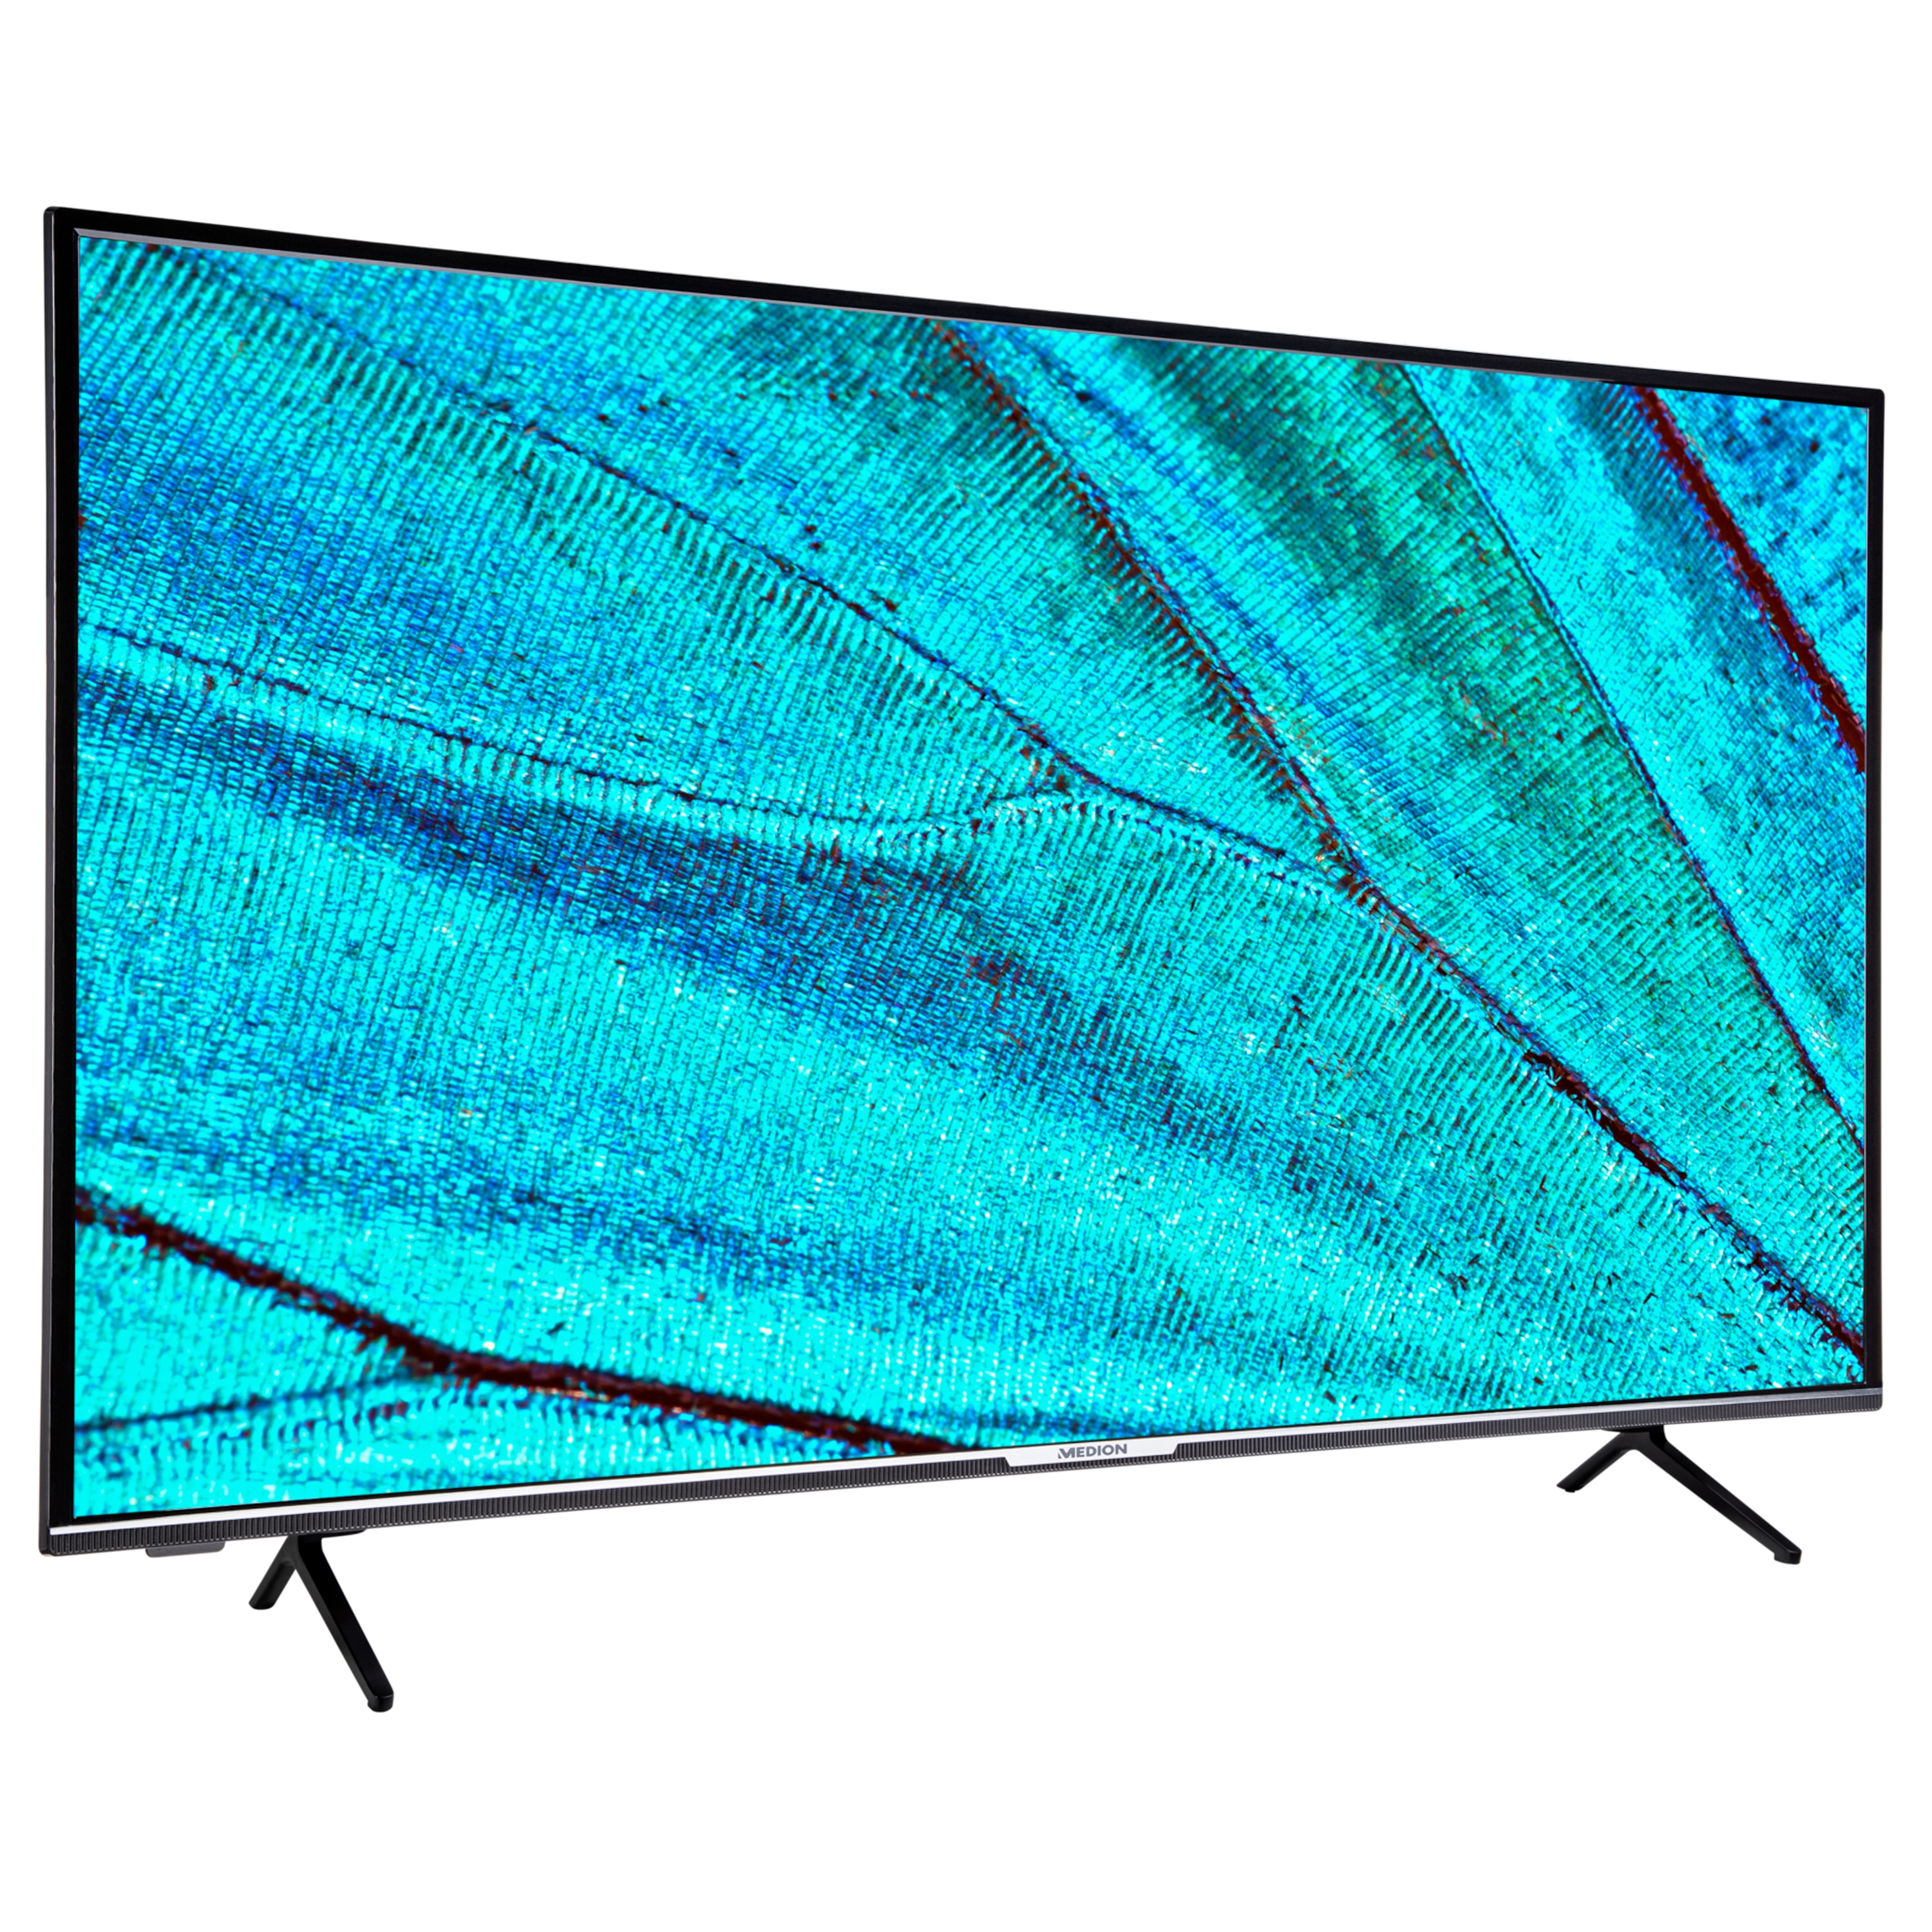 MEDION® LIFE® X14380 Smart-TV, 108 cm (43'') Ultra HD Fernseher, inkl. DVB-T 2 HD Modul (3 Monate freenet TV gratis) - ARTIKELSET